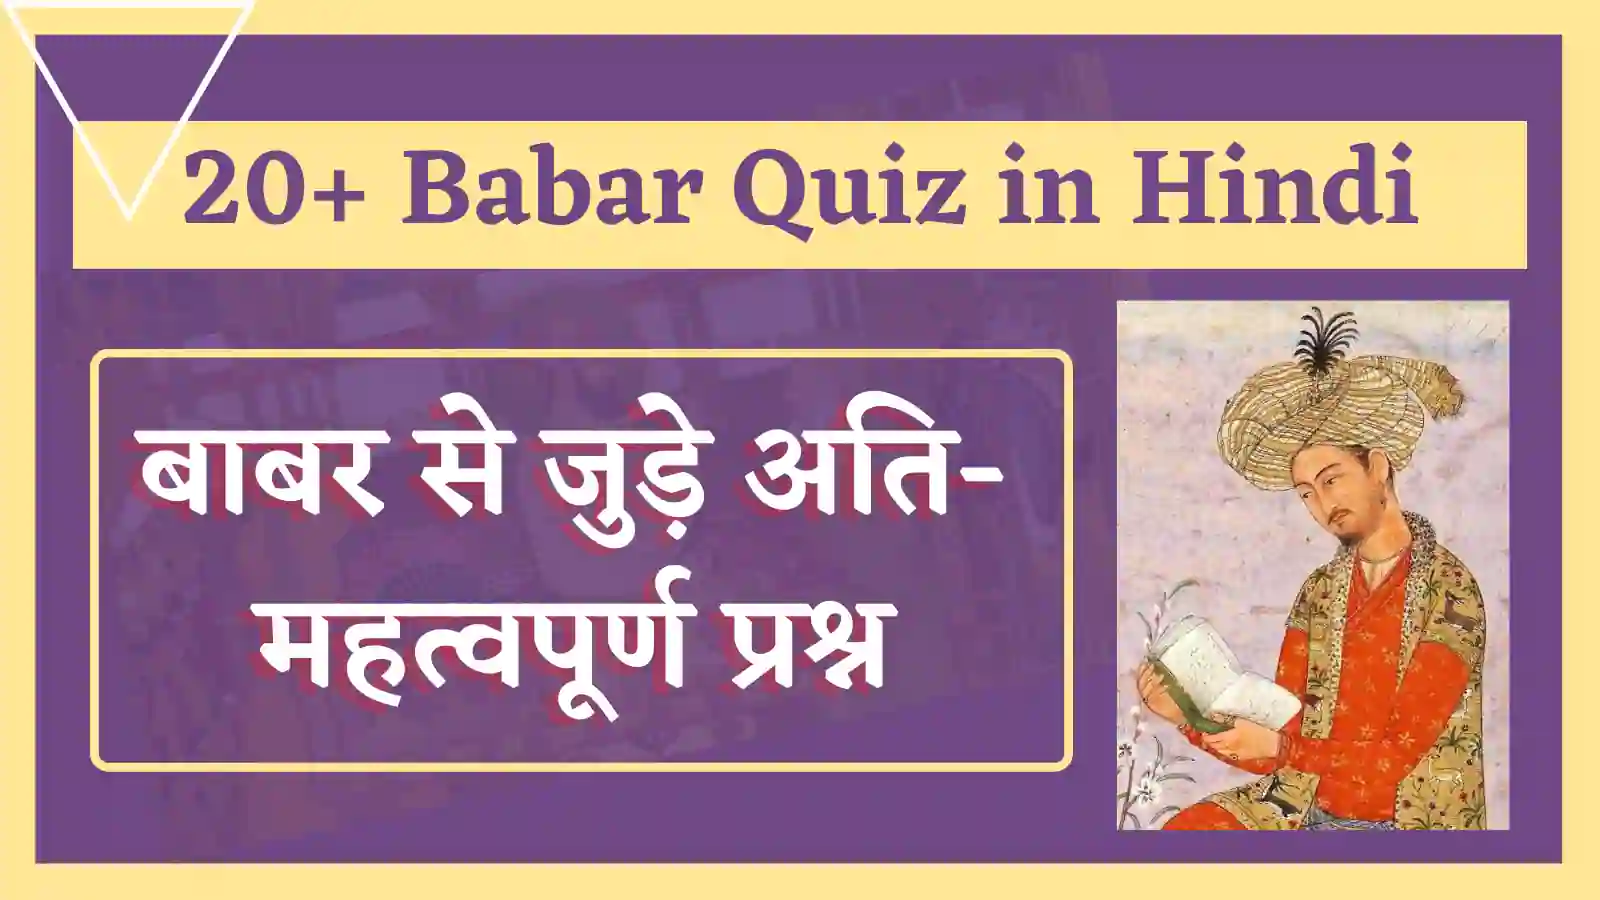 Babar Quiz in Hindi